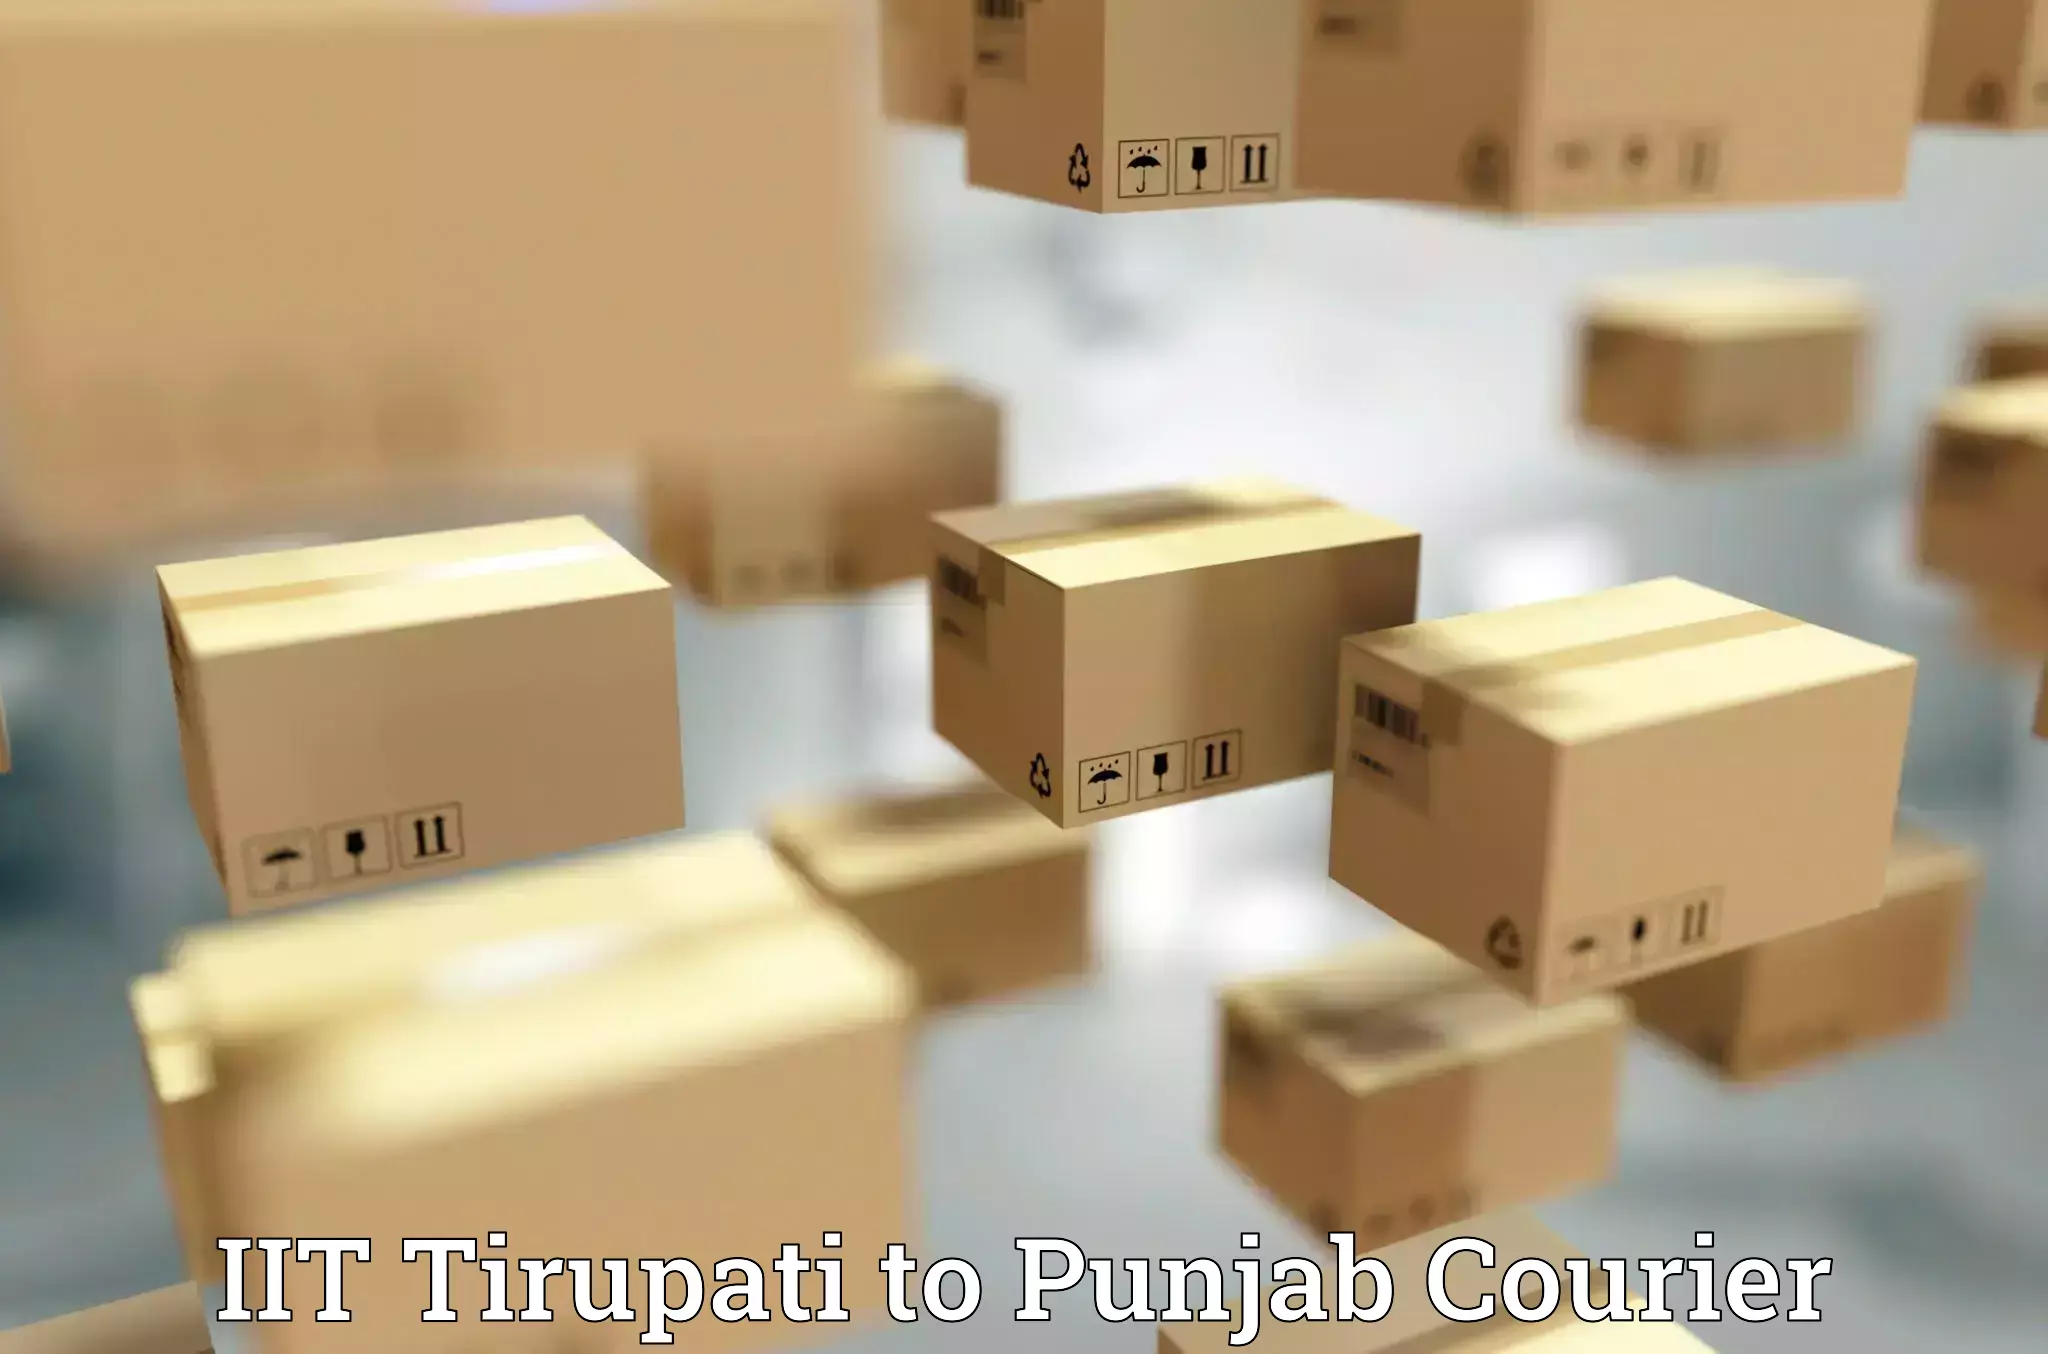 Customized shipping options IIT Tirupati to Central University of Punjab Bathinda